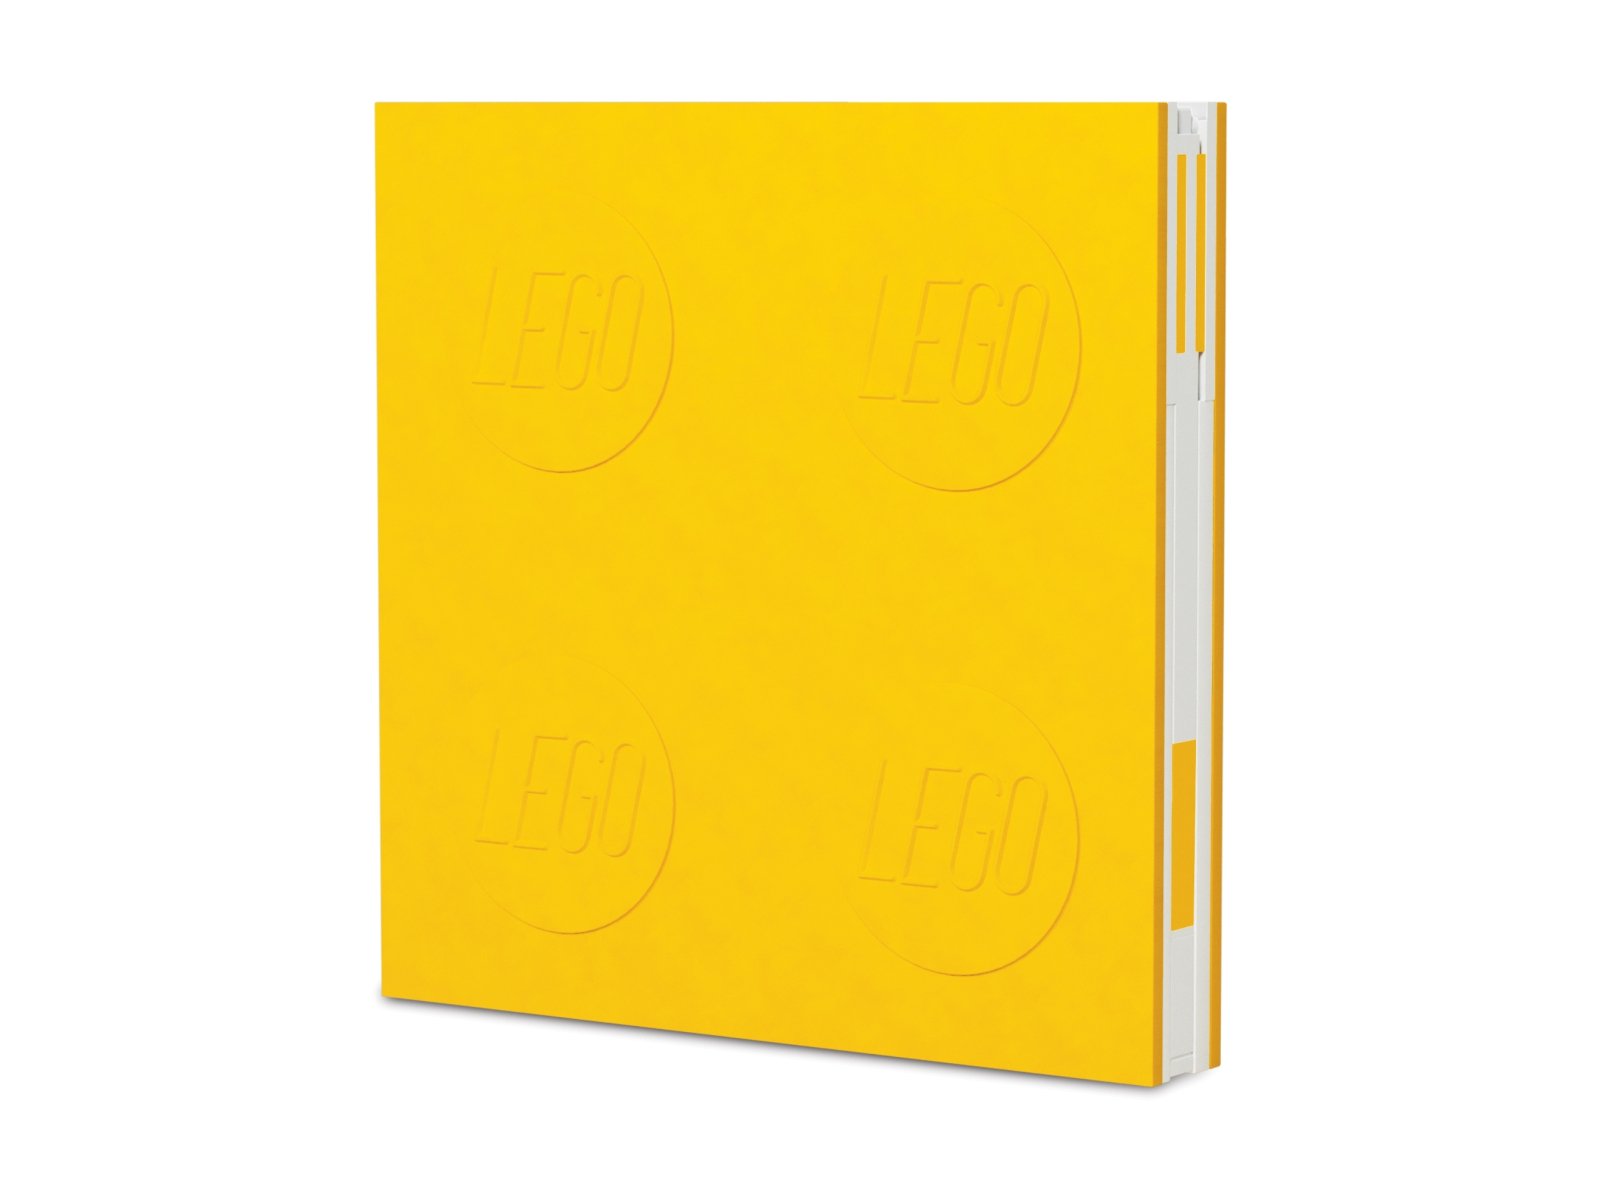 LEGO Notatnik z długopisem żelowym – żółty 5007241